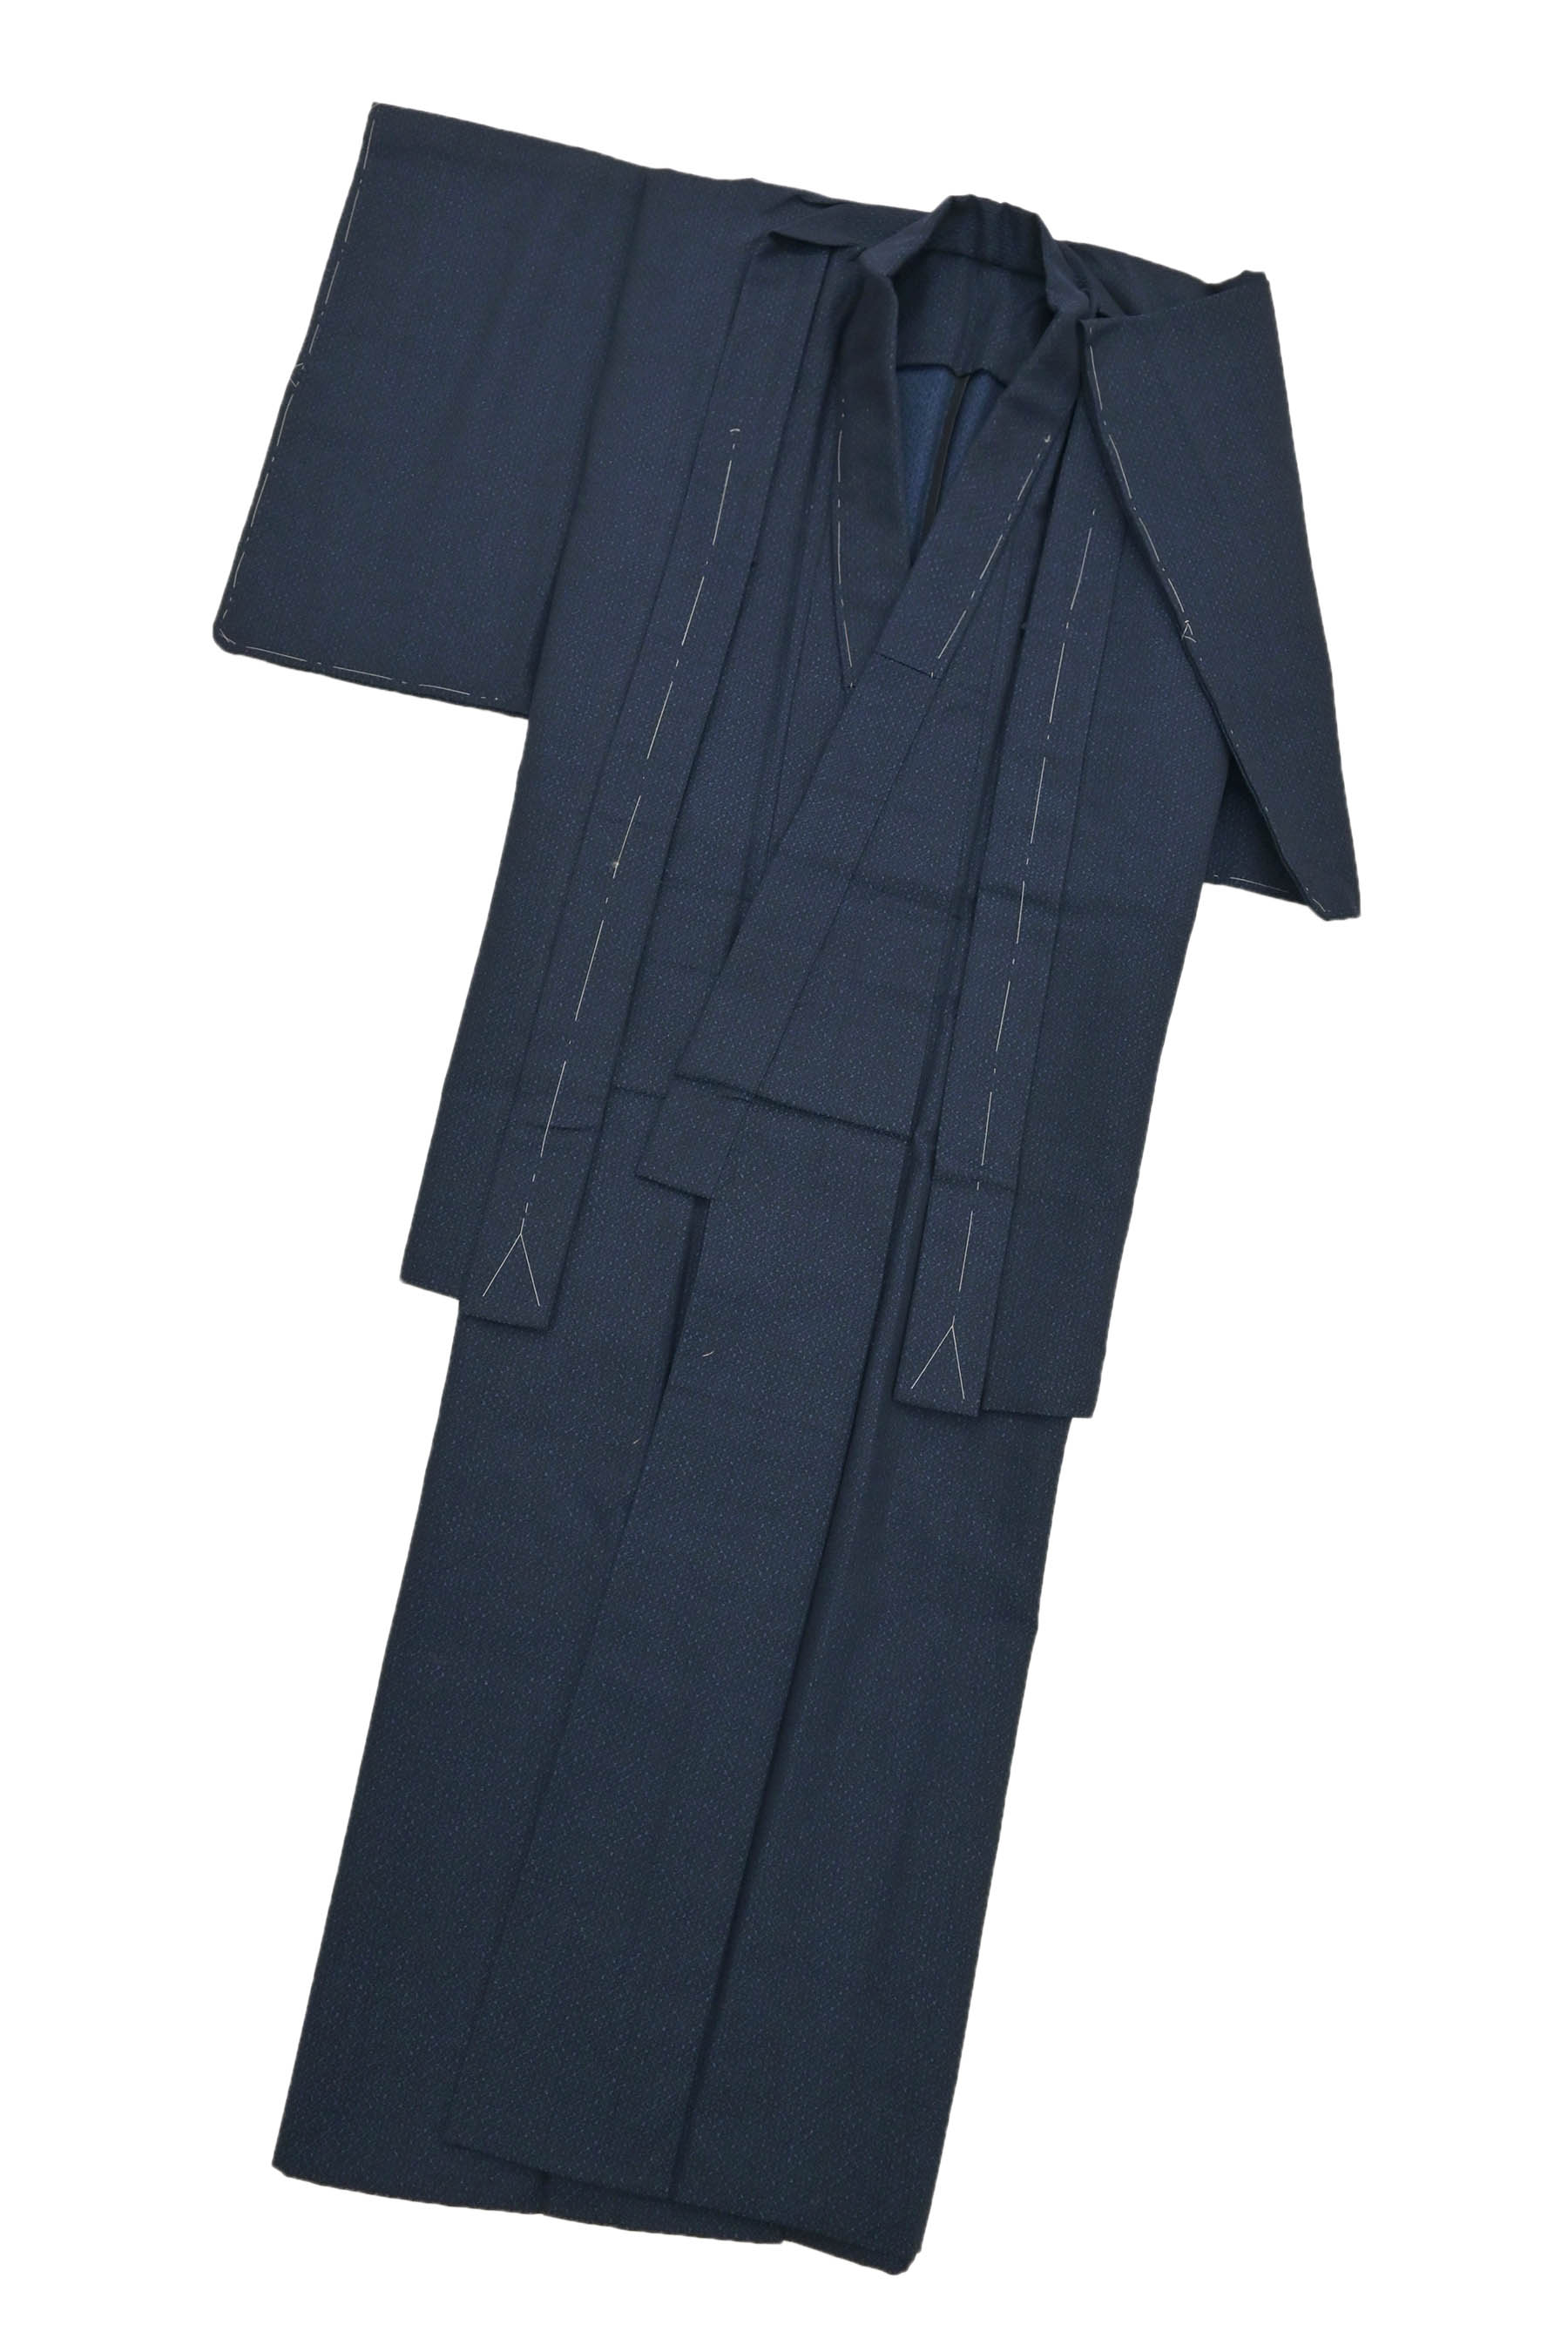 ウールの着物・羽織アンサンブル 濃紺地 １-２才 日本製 新品 kk419